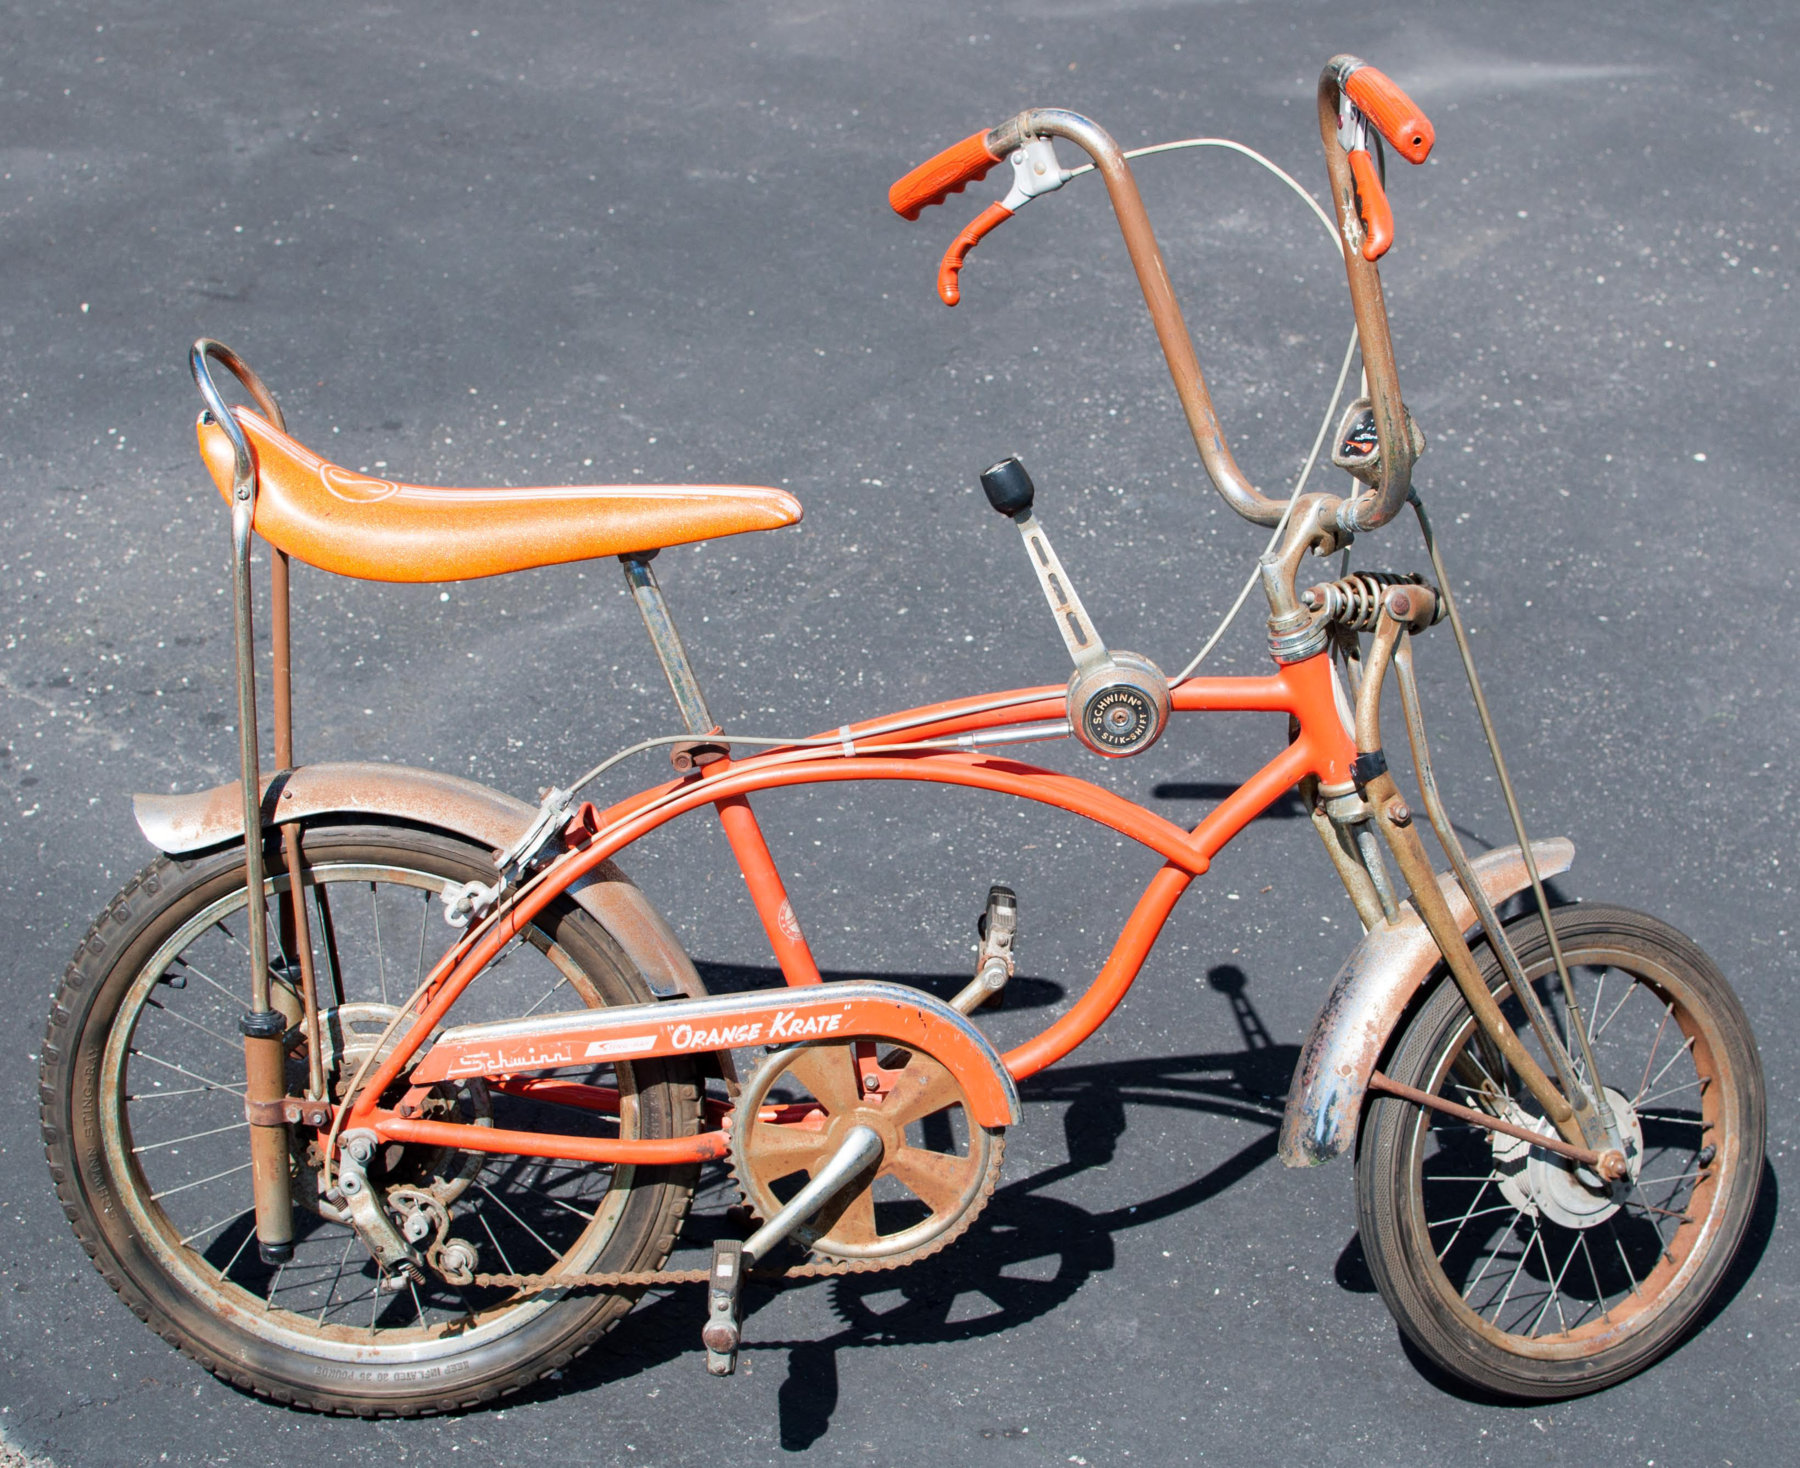 schwinn orange krate bike